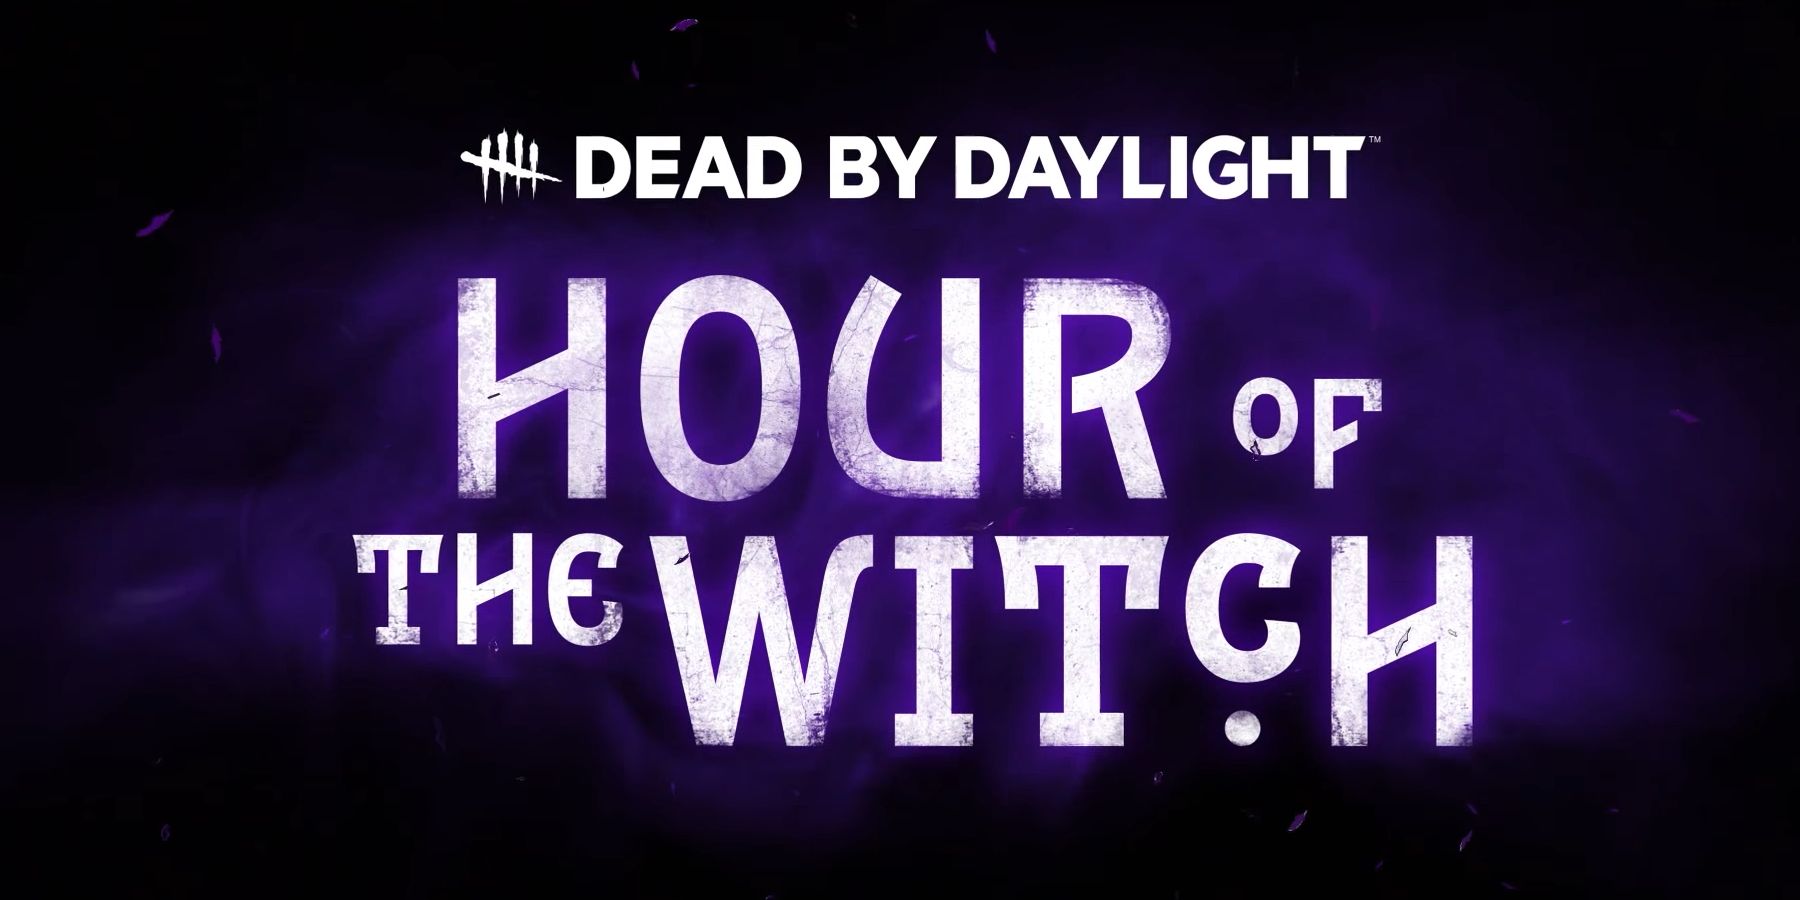 Mŕtvy pri dennom svetle odhaľuje hodinu čarodejnice DLC pre Halloween s novými pozostalostnými